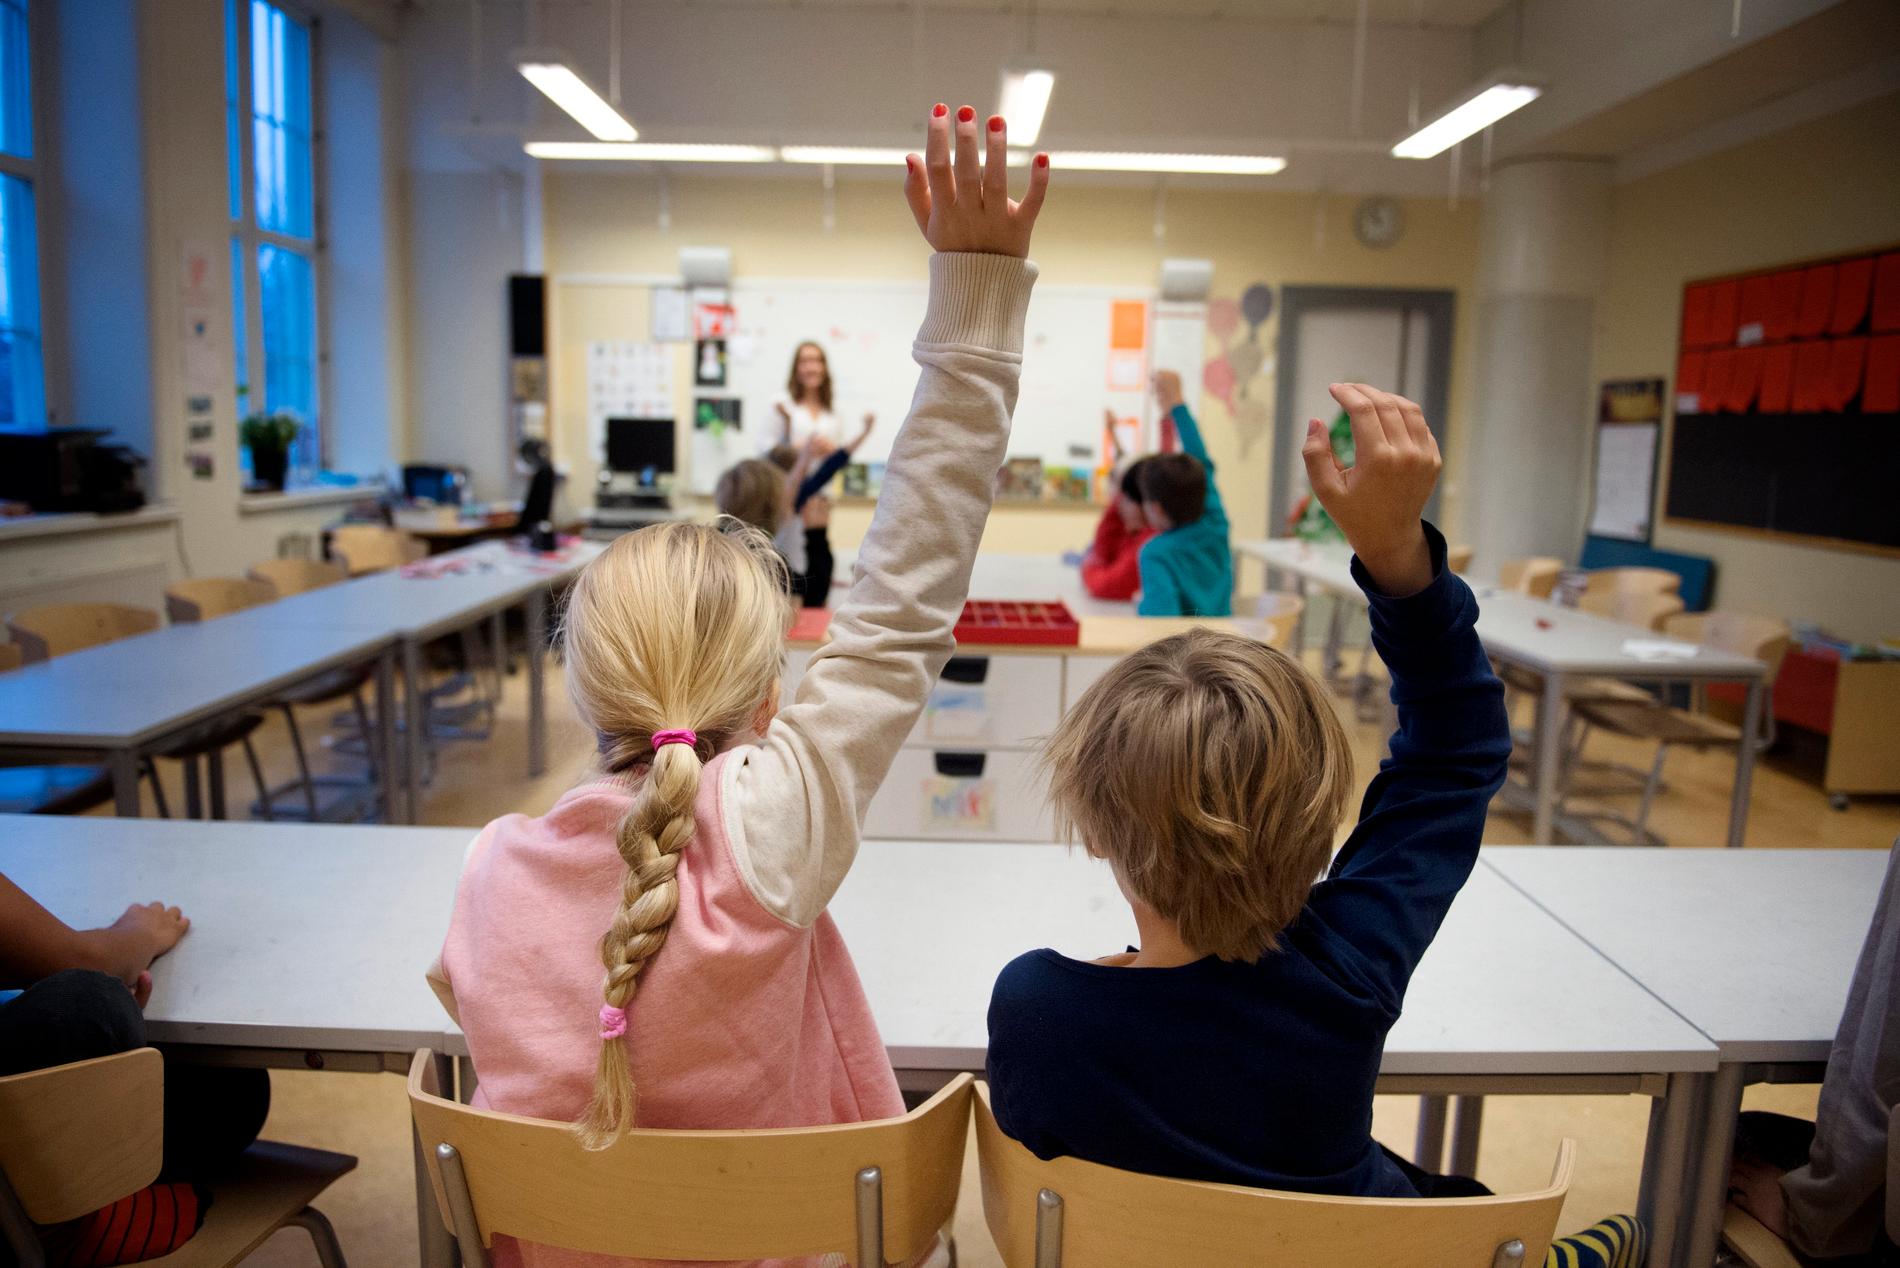 Är du smittsam, lille vän? Frågan huruvida barn är smittsamma eller inte delar forskarna i två läger. Det finns forskning som pekar åt båda hållen. I Sverige lutar dock experterna mot att barn inte spelar en avgörande betydelse för pandemins utbredning. Arkivbild.